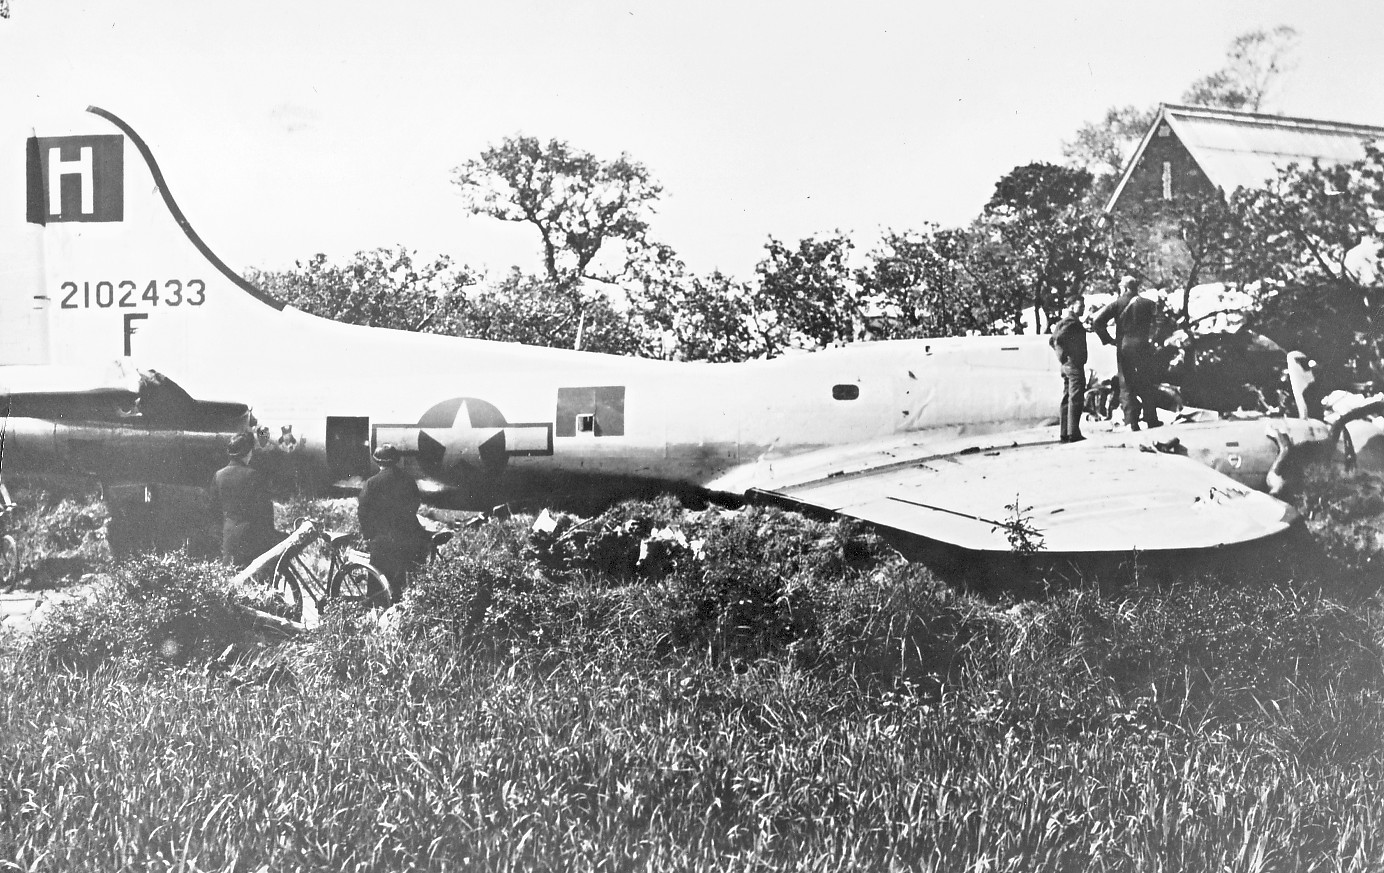 B-17 42-102433